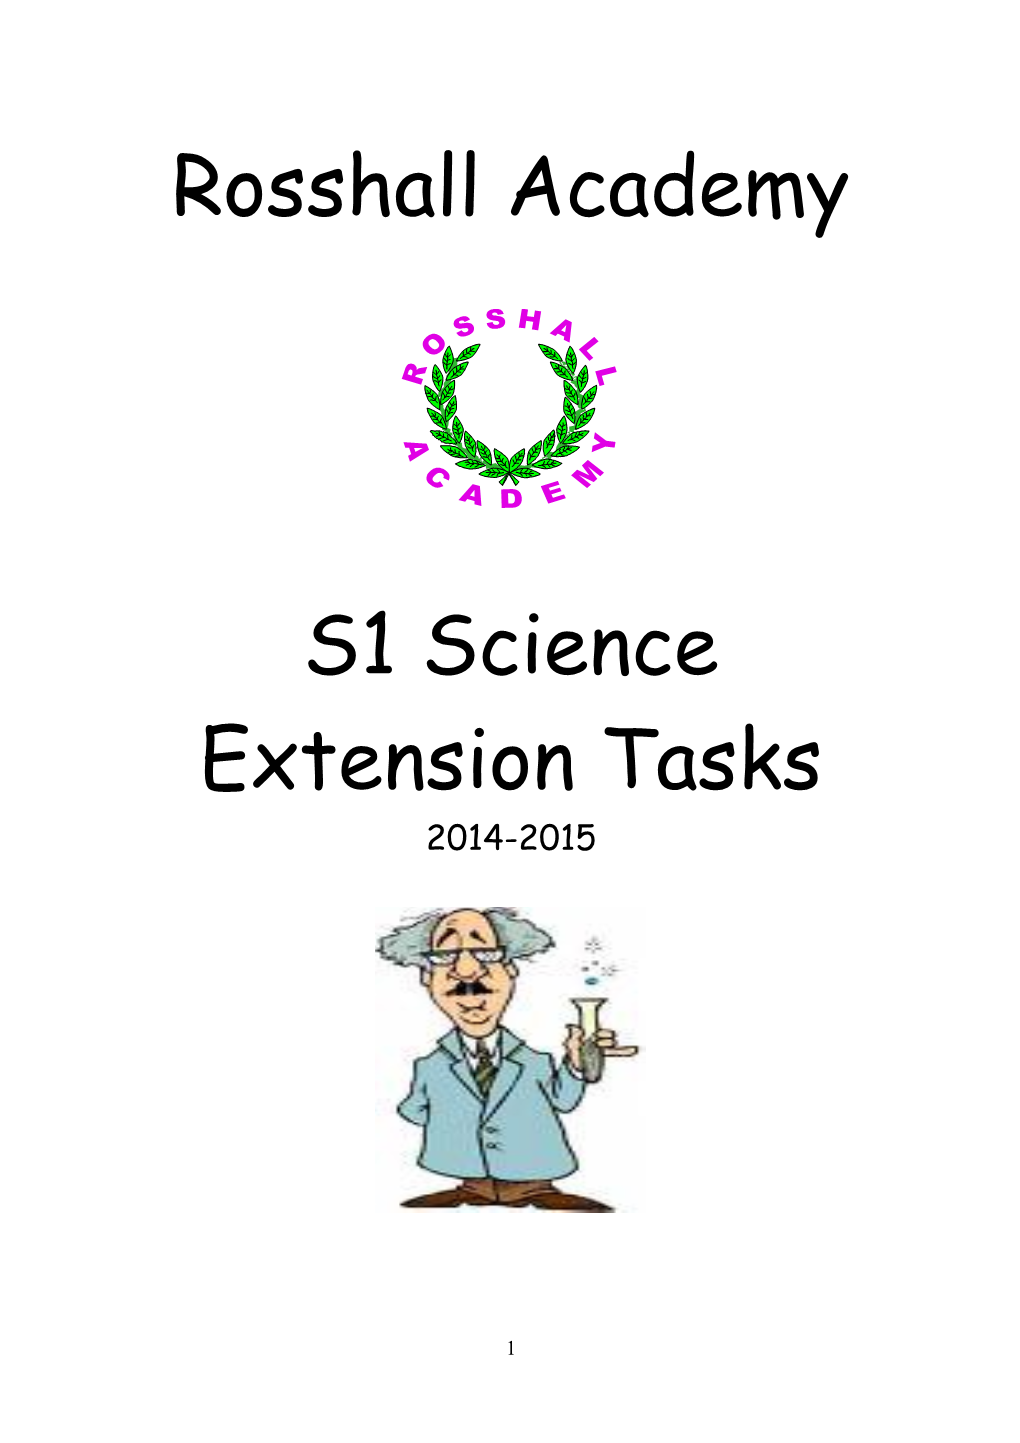 Extension Tasks